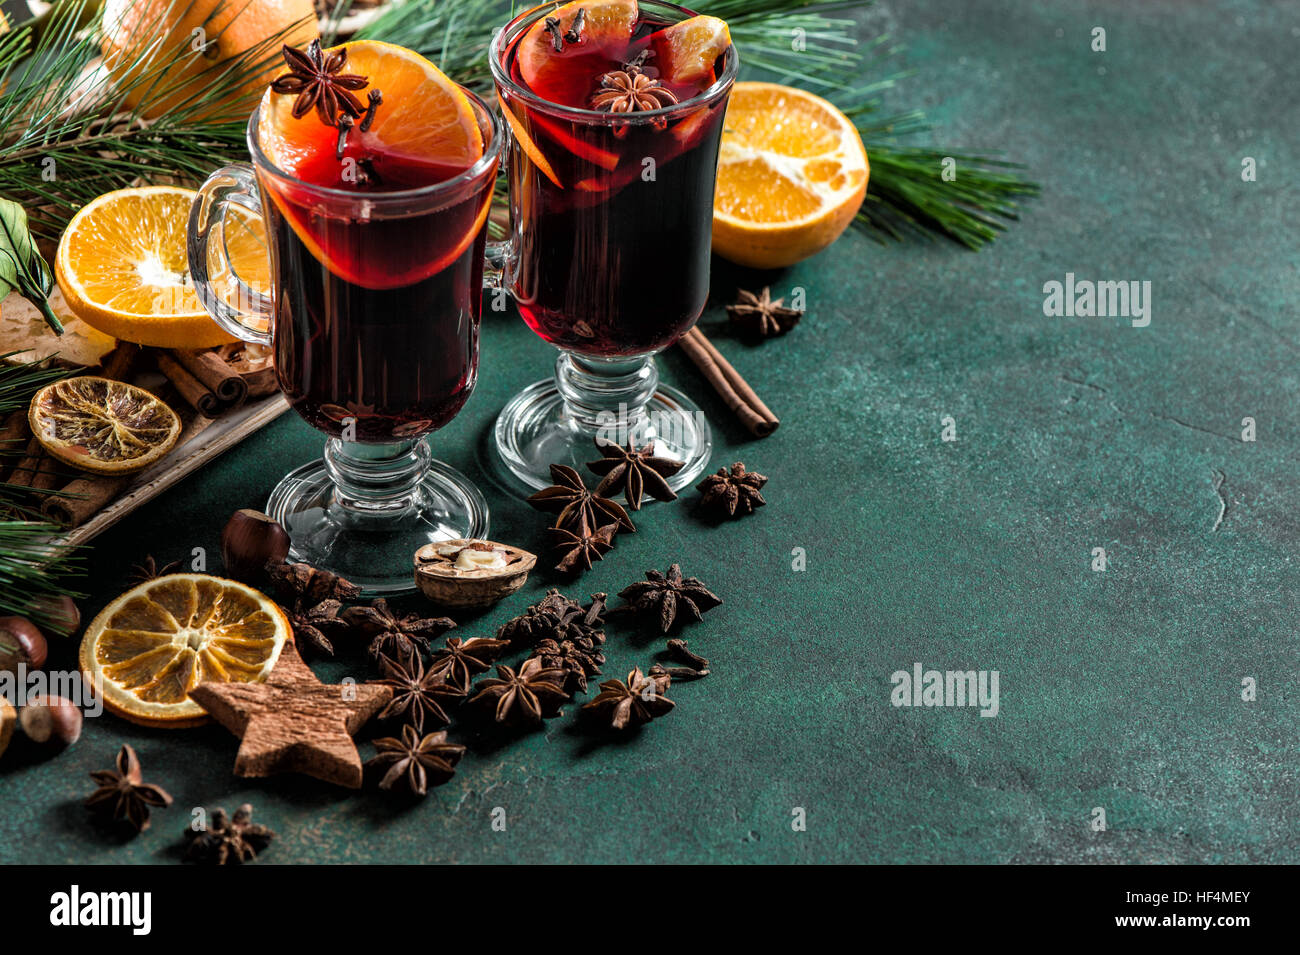 Vin chaud ingrédients sur fond sombre. Hot Red punch aux fruits et épices boisson Noël Banque D'Images